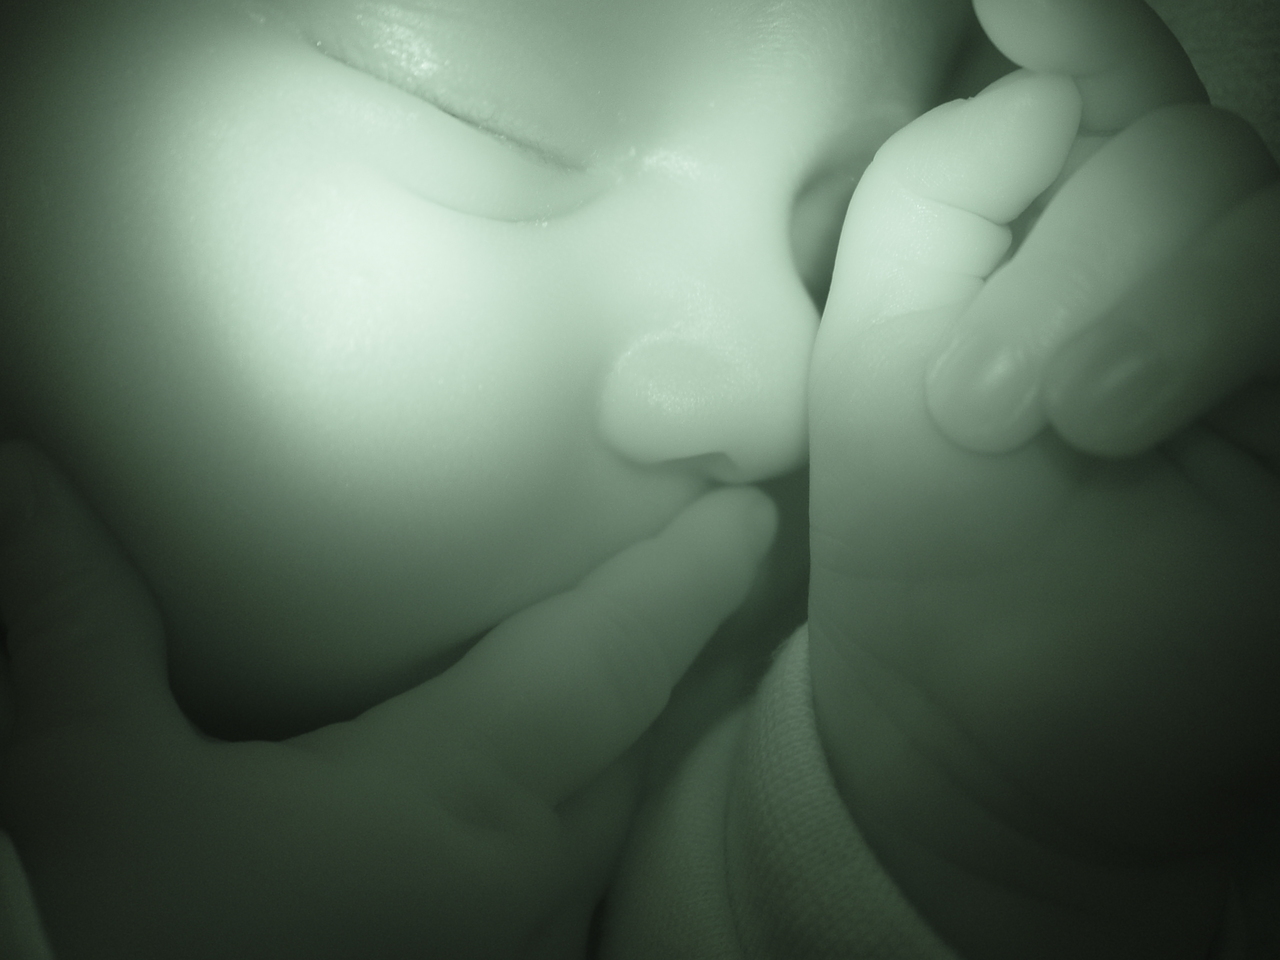 Mistero all’ospedale di Treviso: neonato trovato morto dopo parto